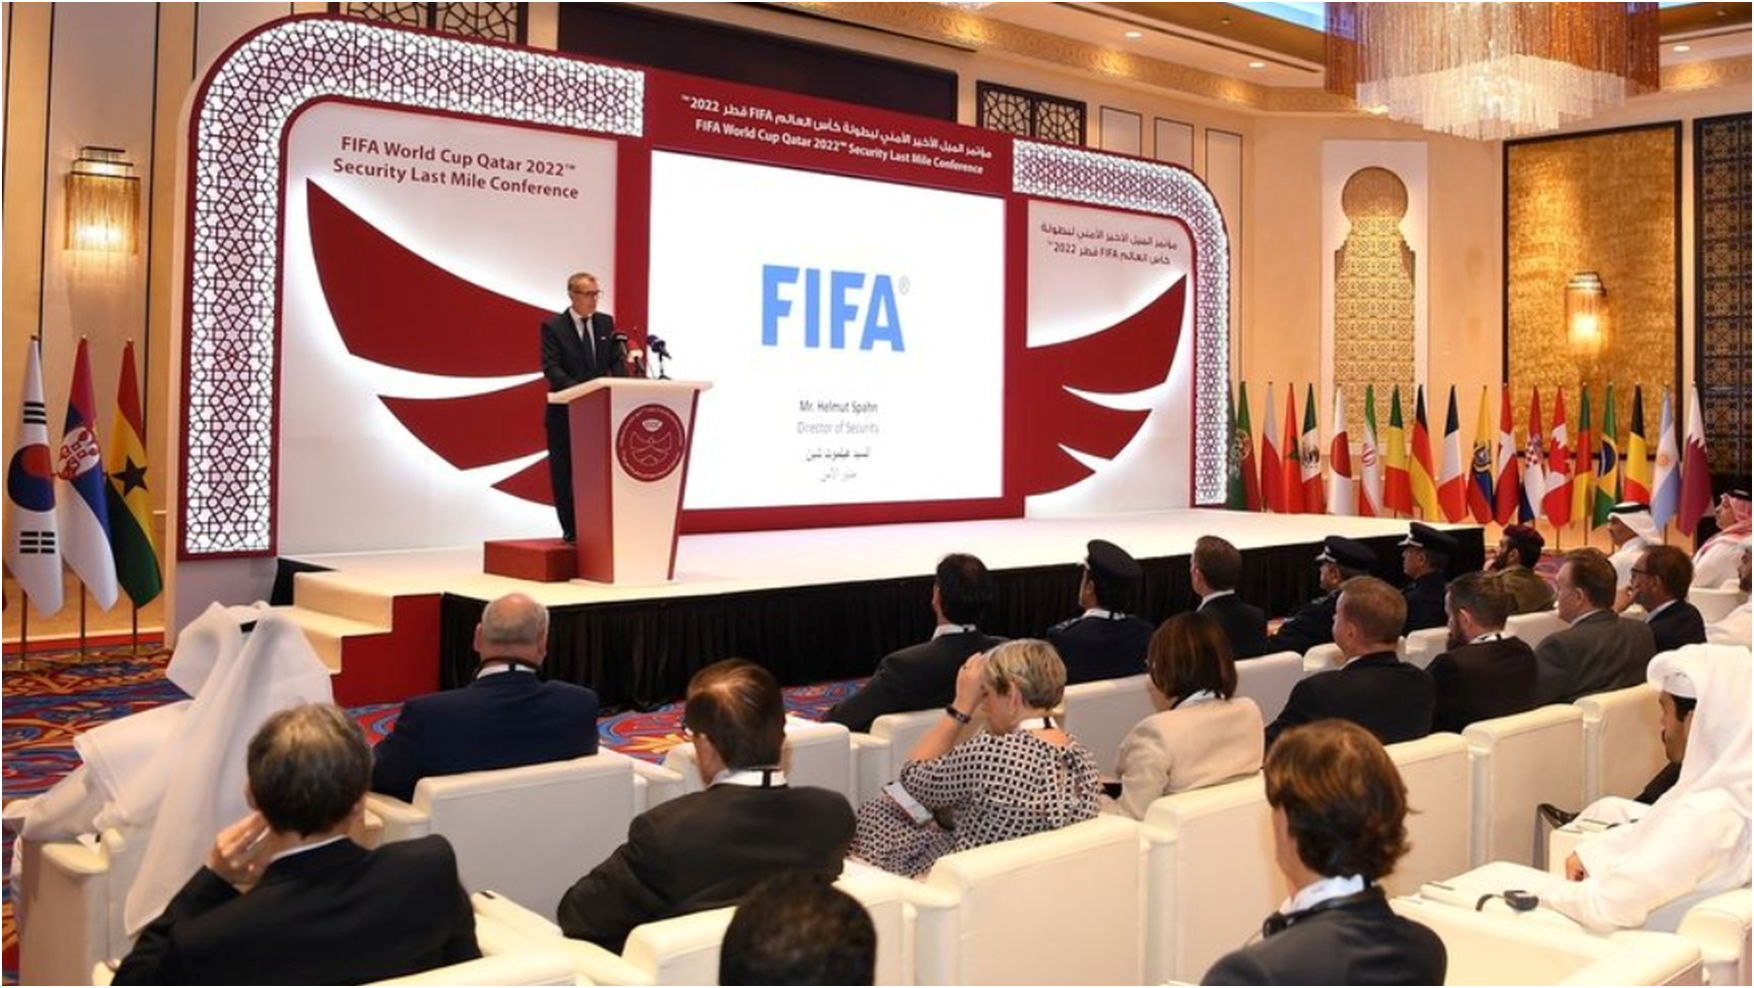 Hace un mes, Qatar organizó una conferencia de seguridad para la Copa del Mundo